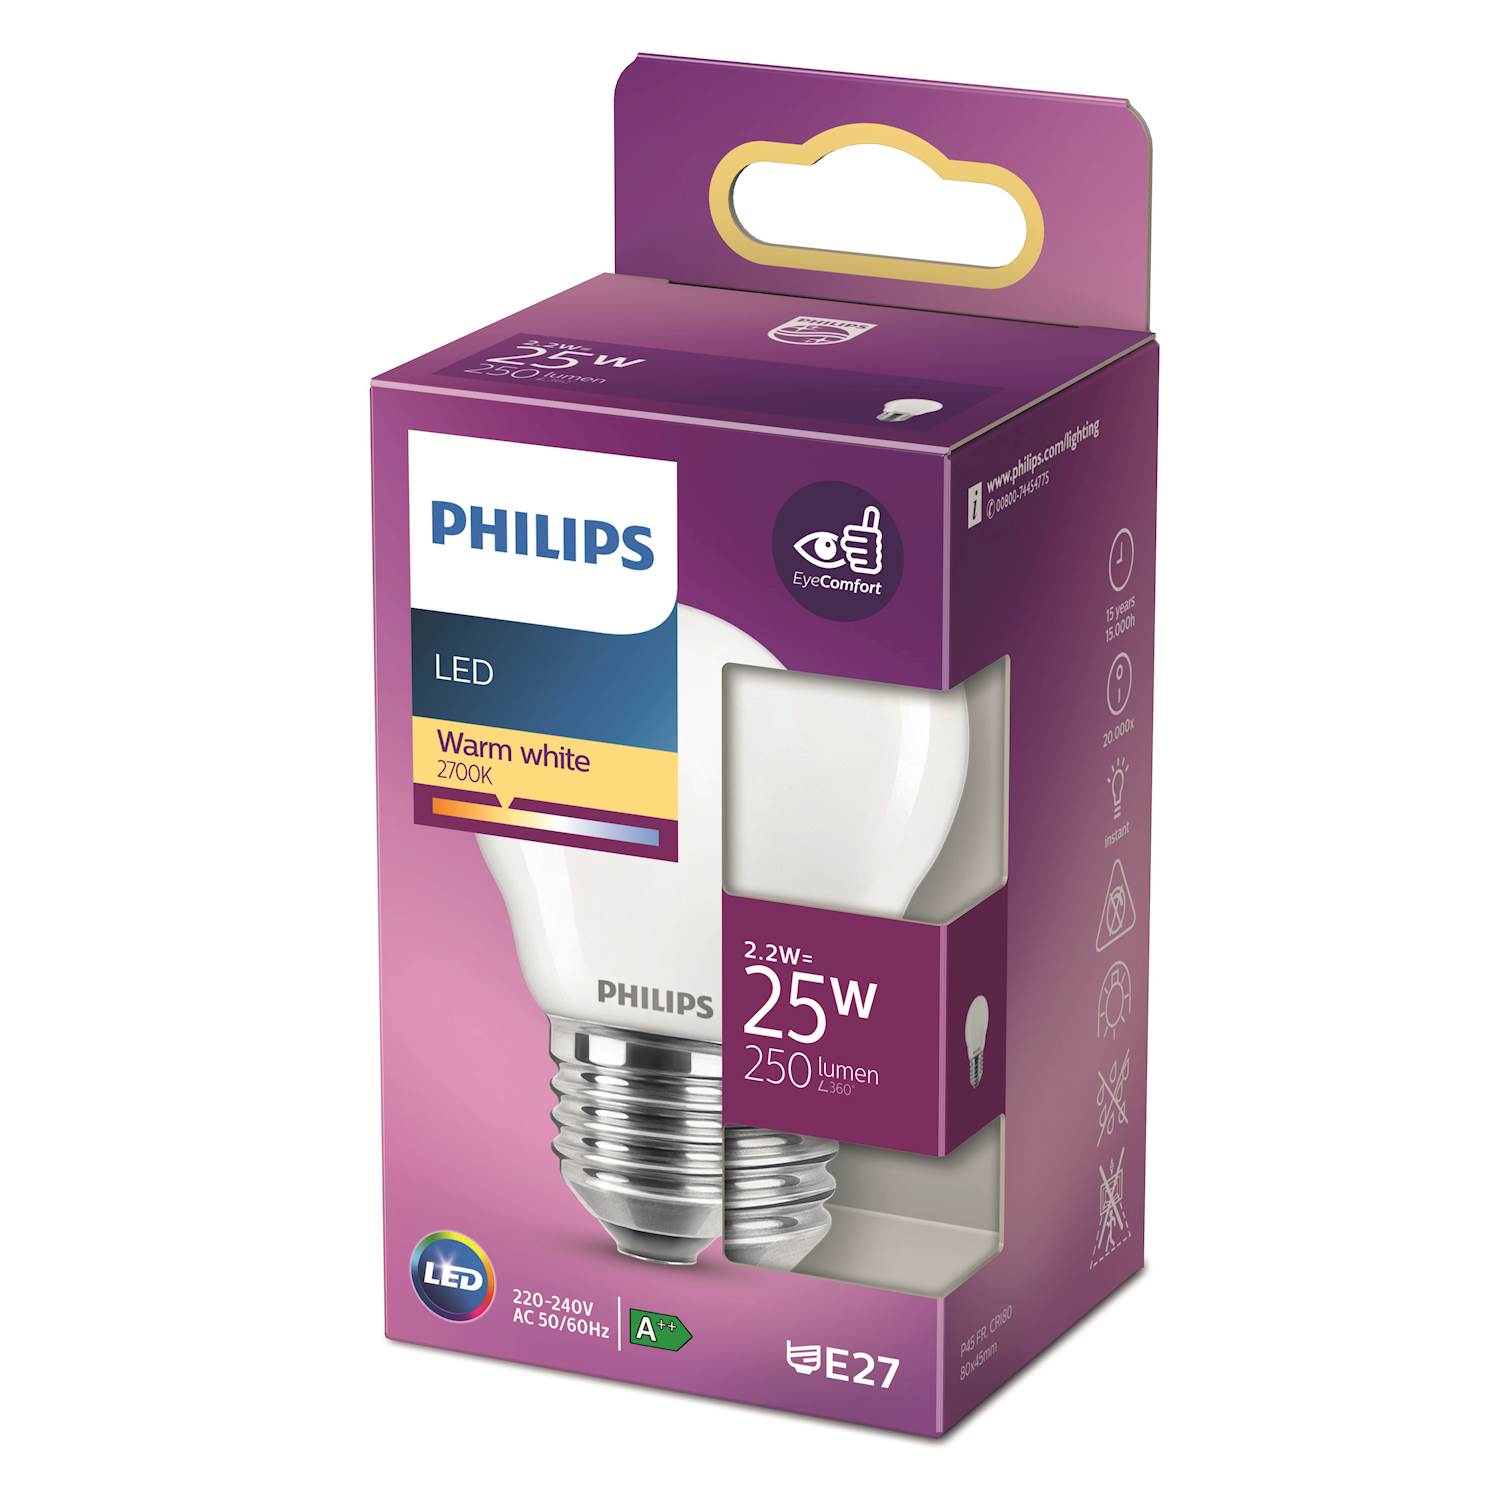 Philips LED Classic 25w klot e27 nd